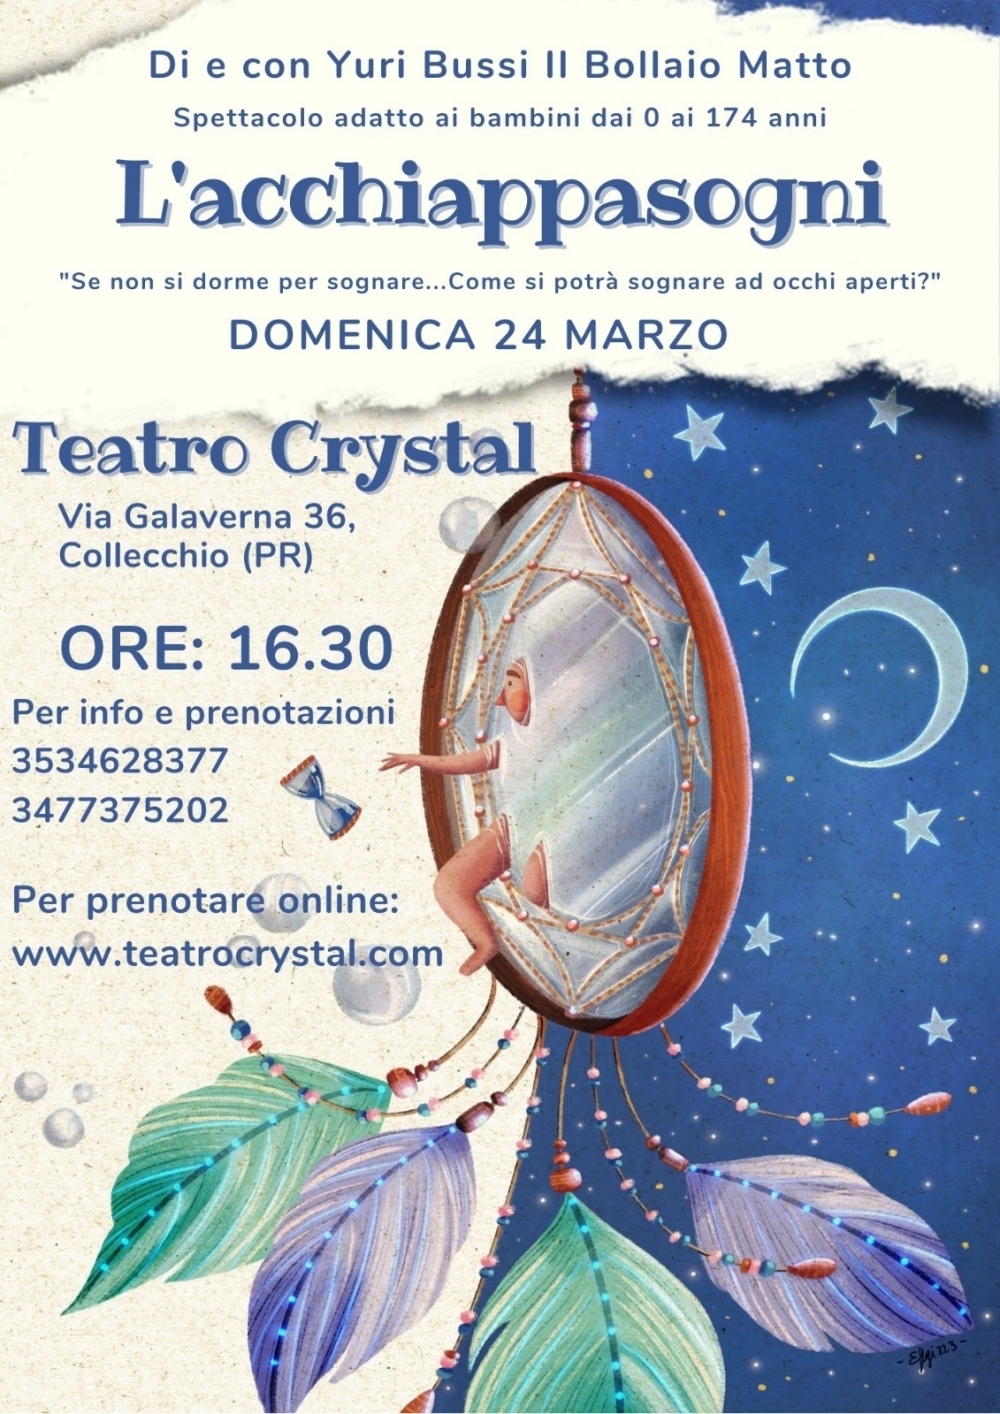  - Teatro Crystal